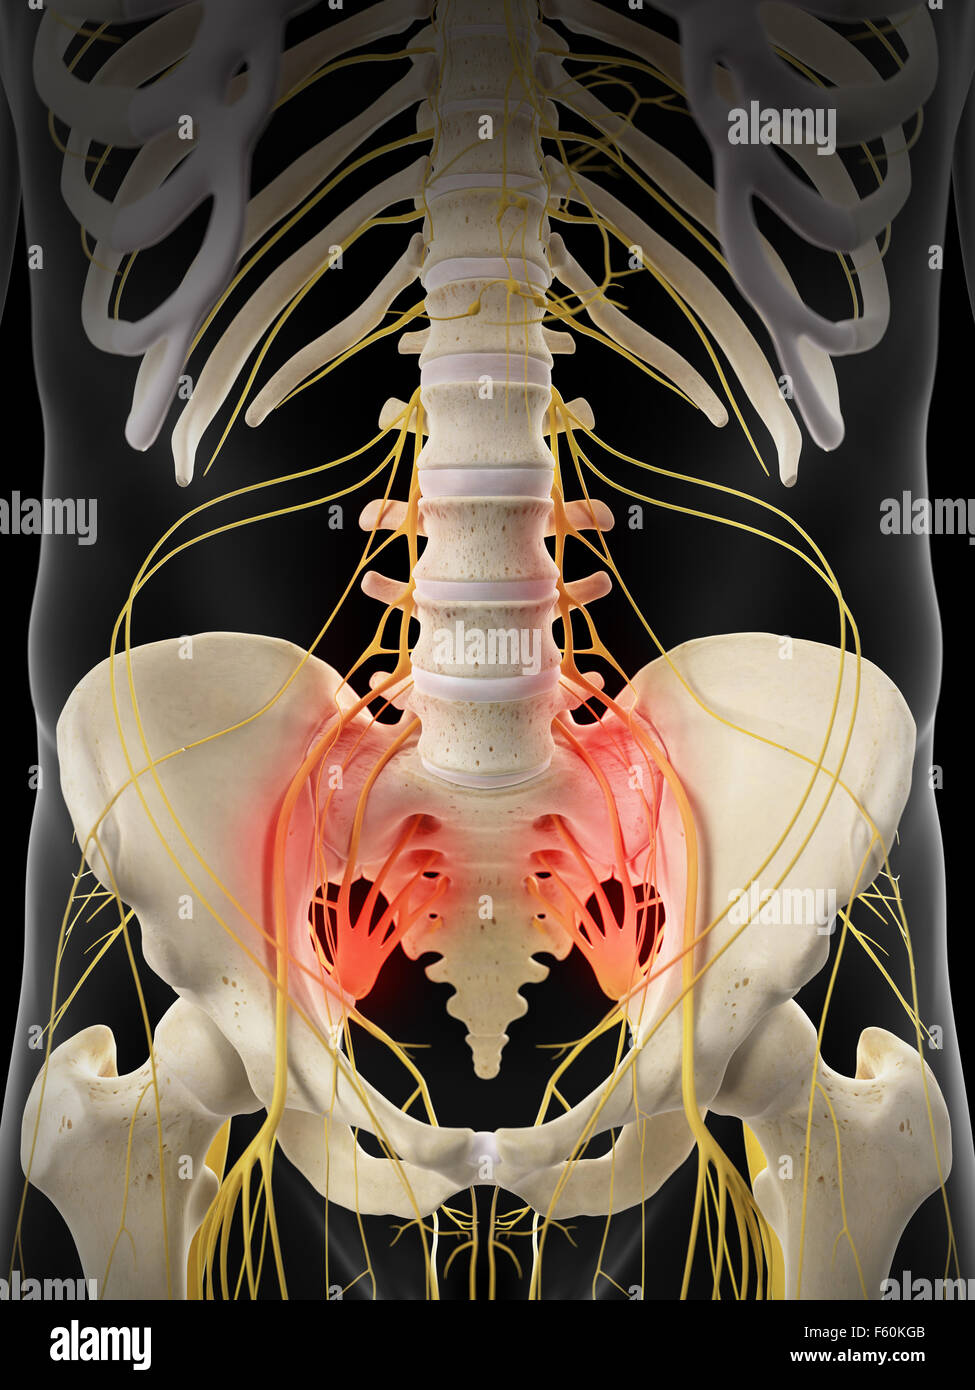 Dal punto di vista medico illustrazione accurata - dolorosa nervi sacrale Foto Stock